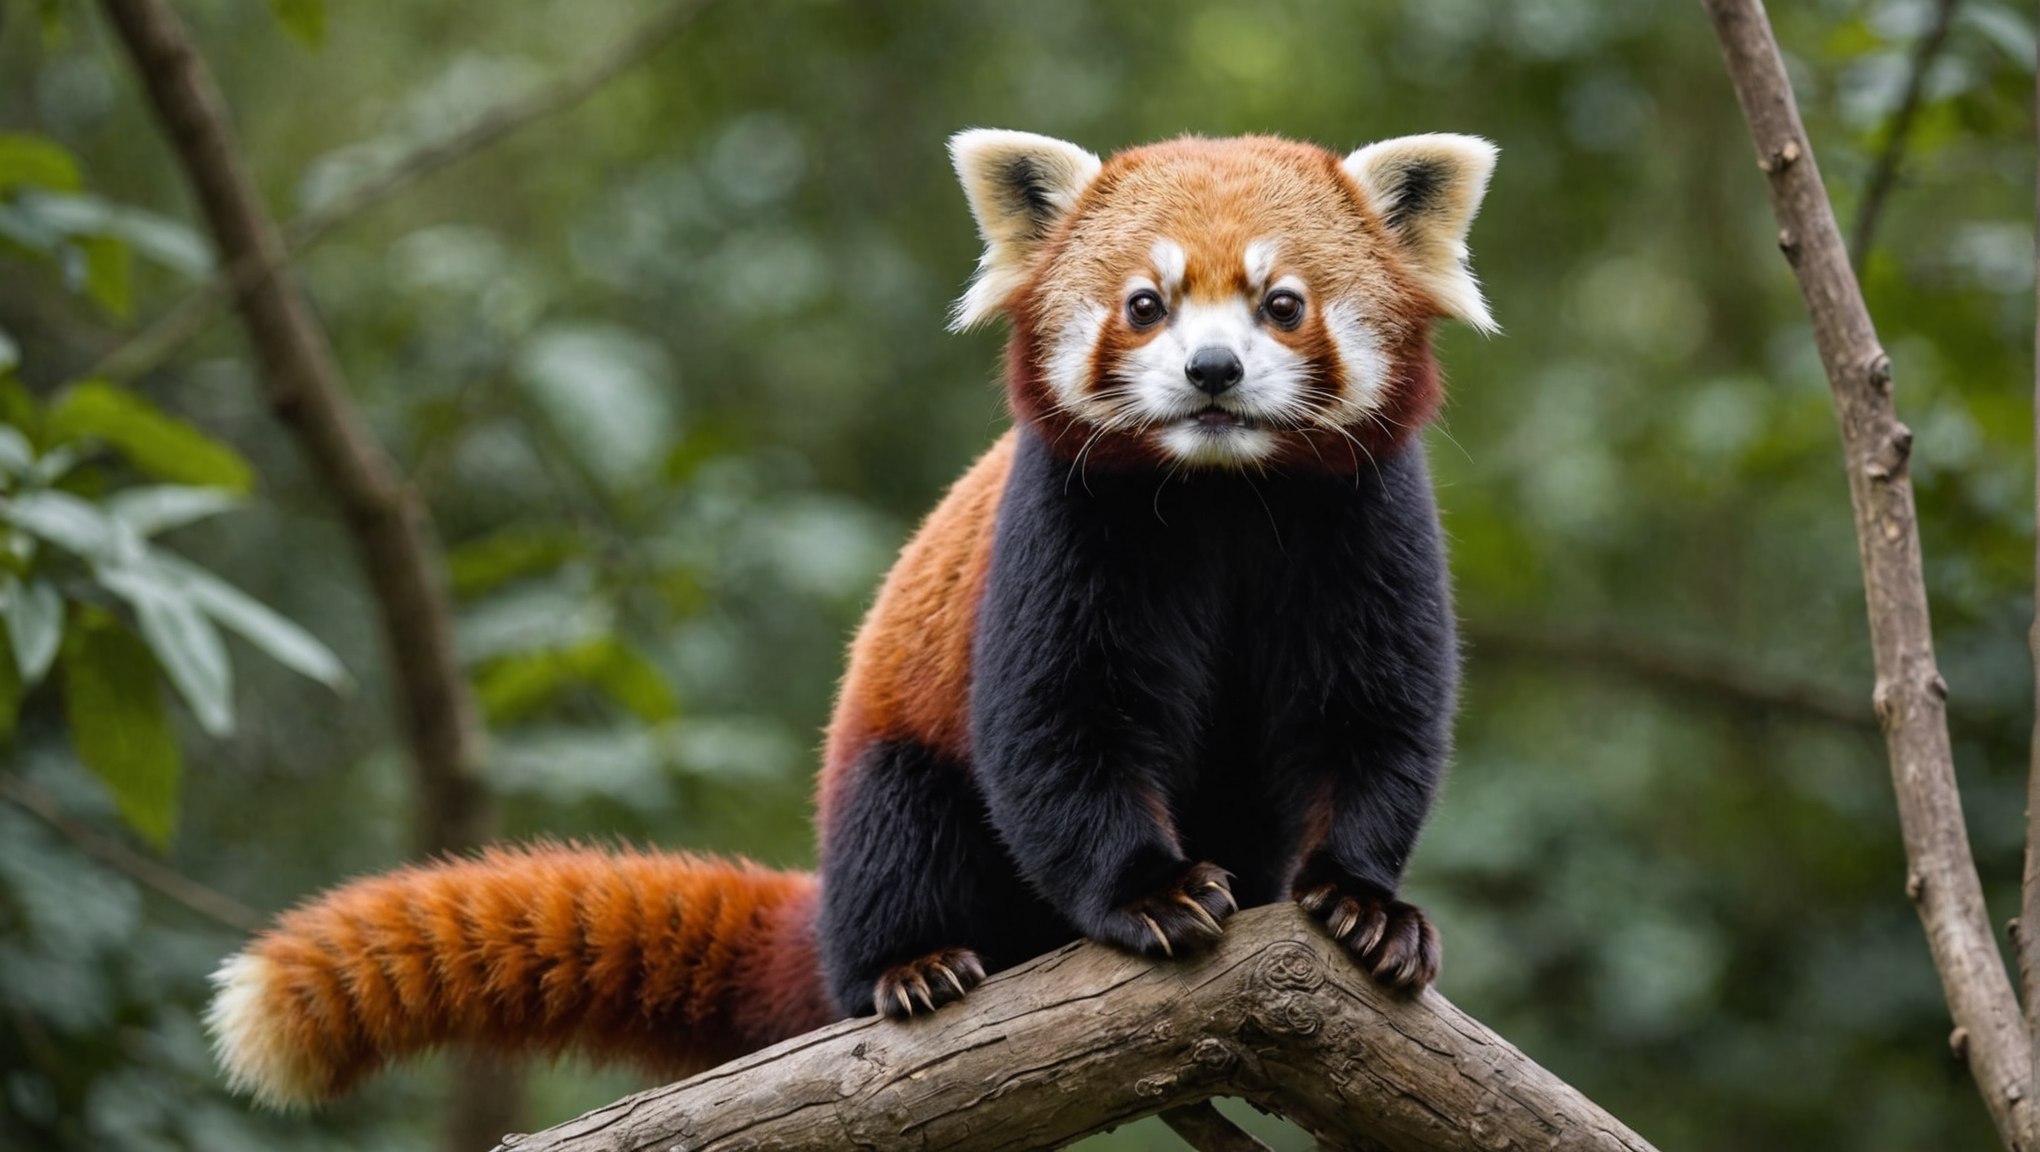 découvrez si le panda roux peut se tenir debout et apprenez-en plus sur ce fascinant animal !